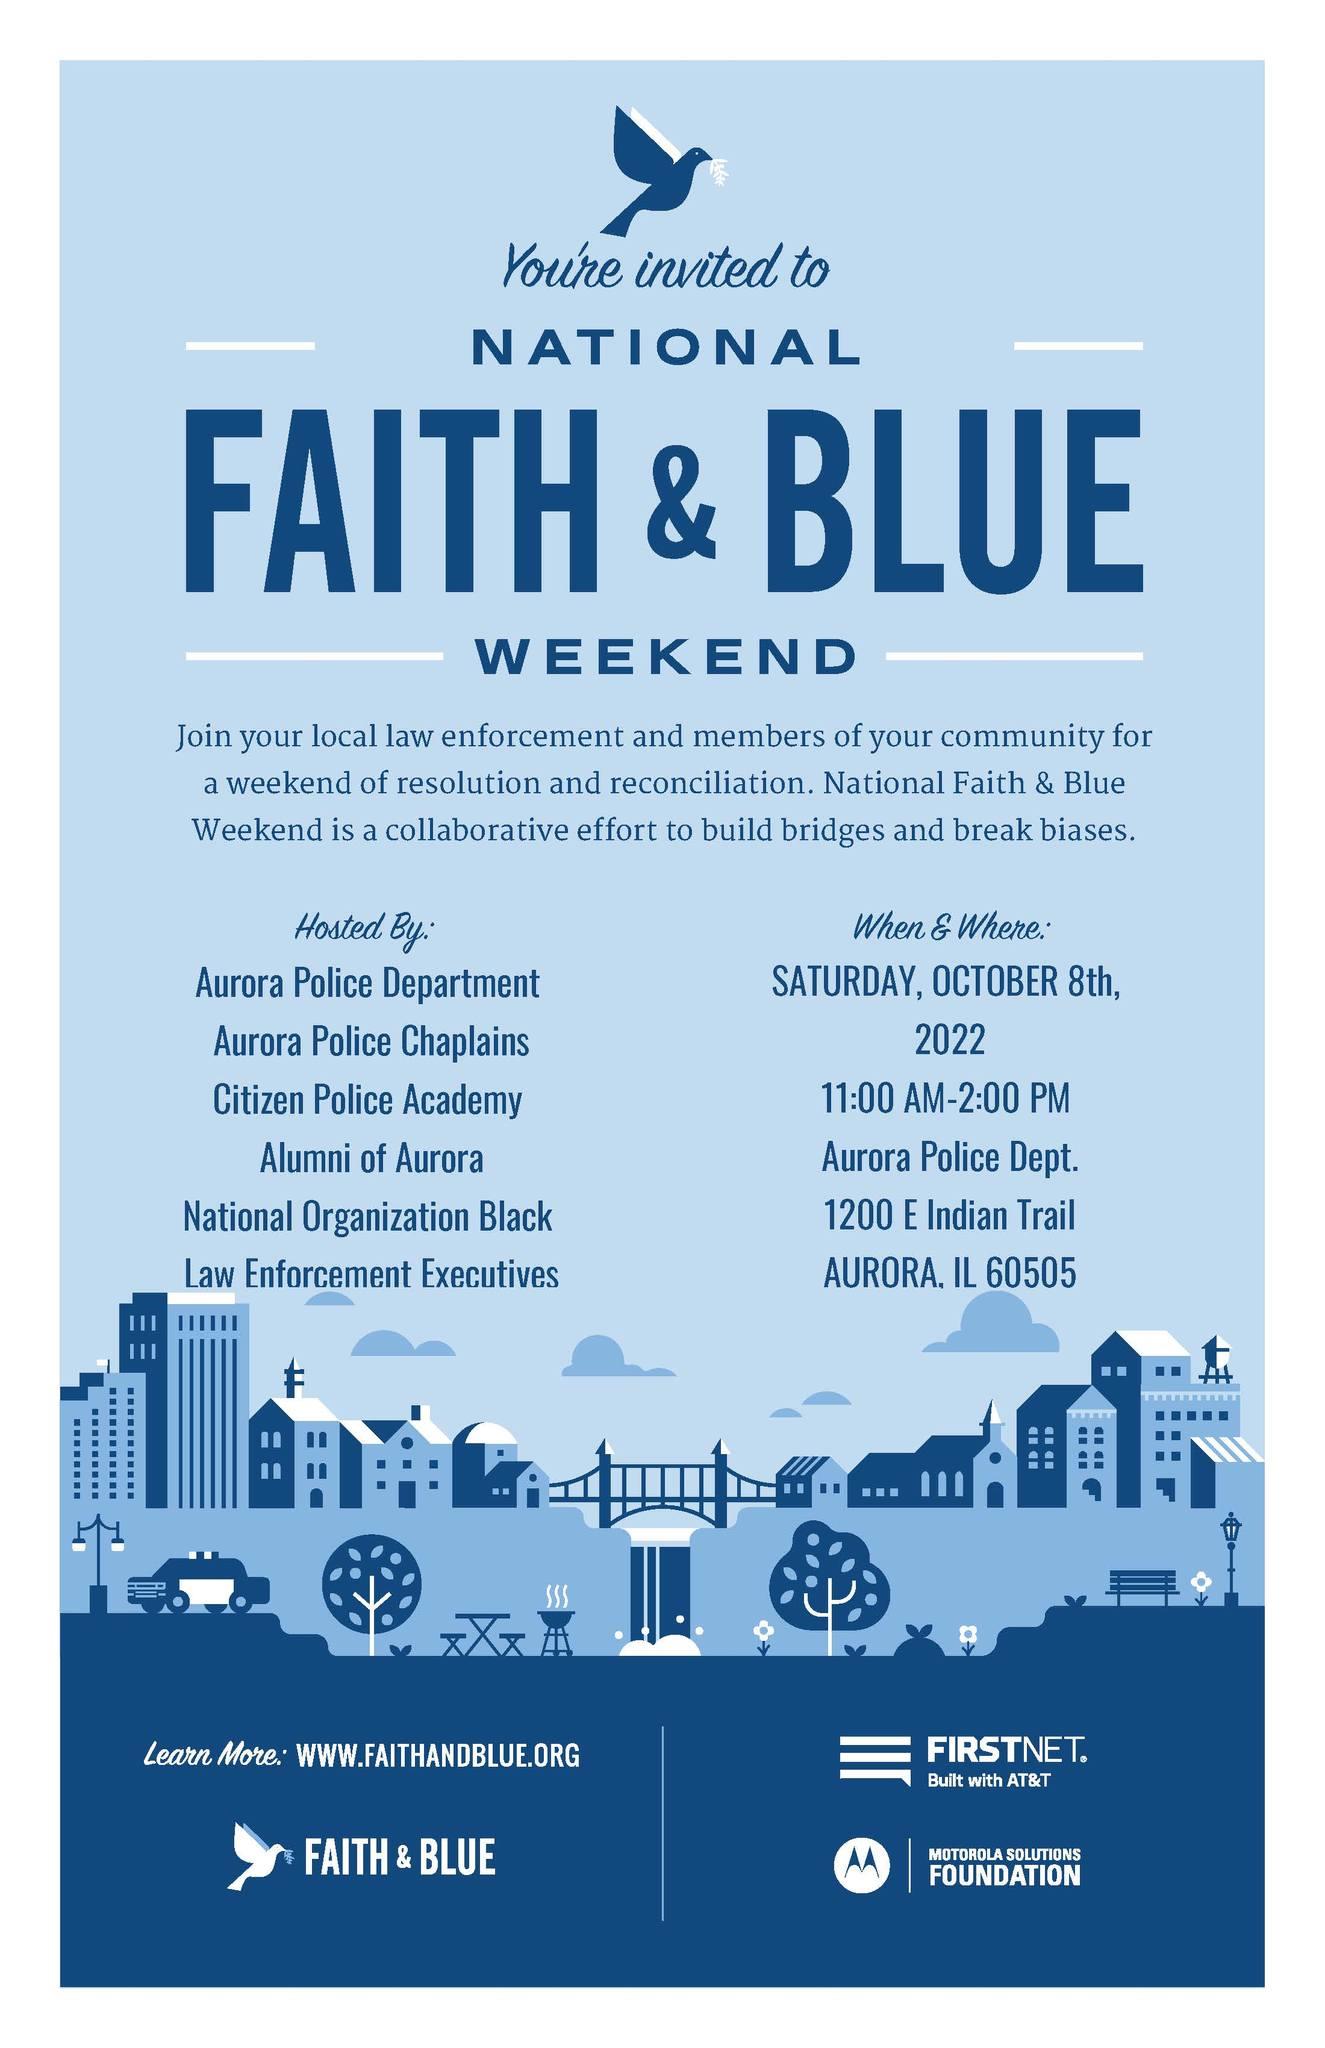 Aurora Faith & Blue Weekend